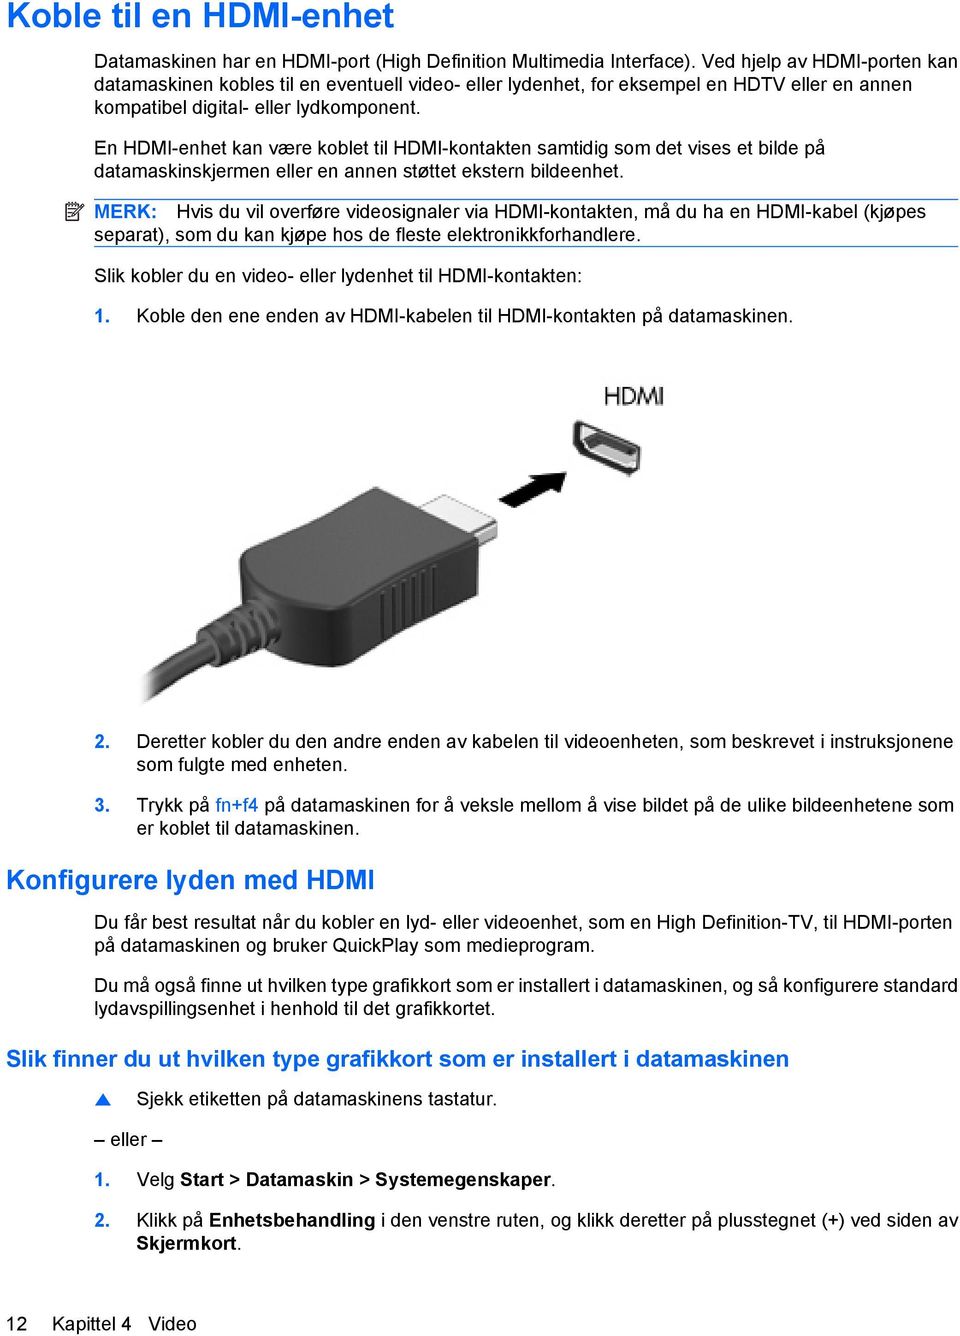 En HDMI-enhet kan være koblet til HDMI-kontakten samtidig som det vises et bilde på datamaskinskjermen eller en annen støttet ekstern bildeenhet.